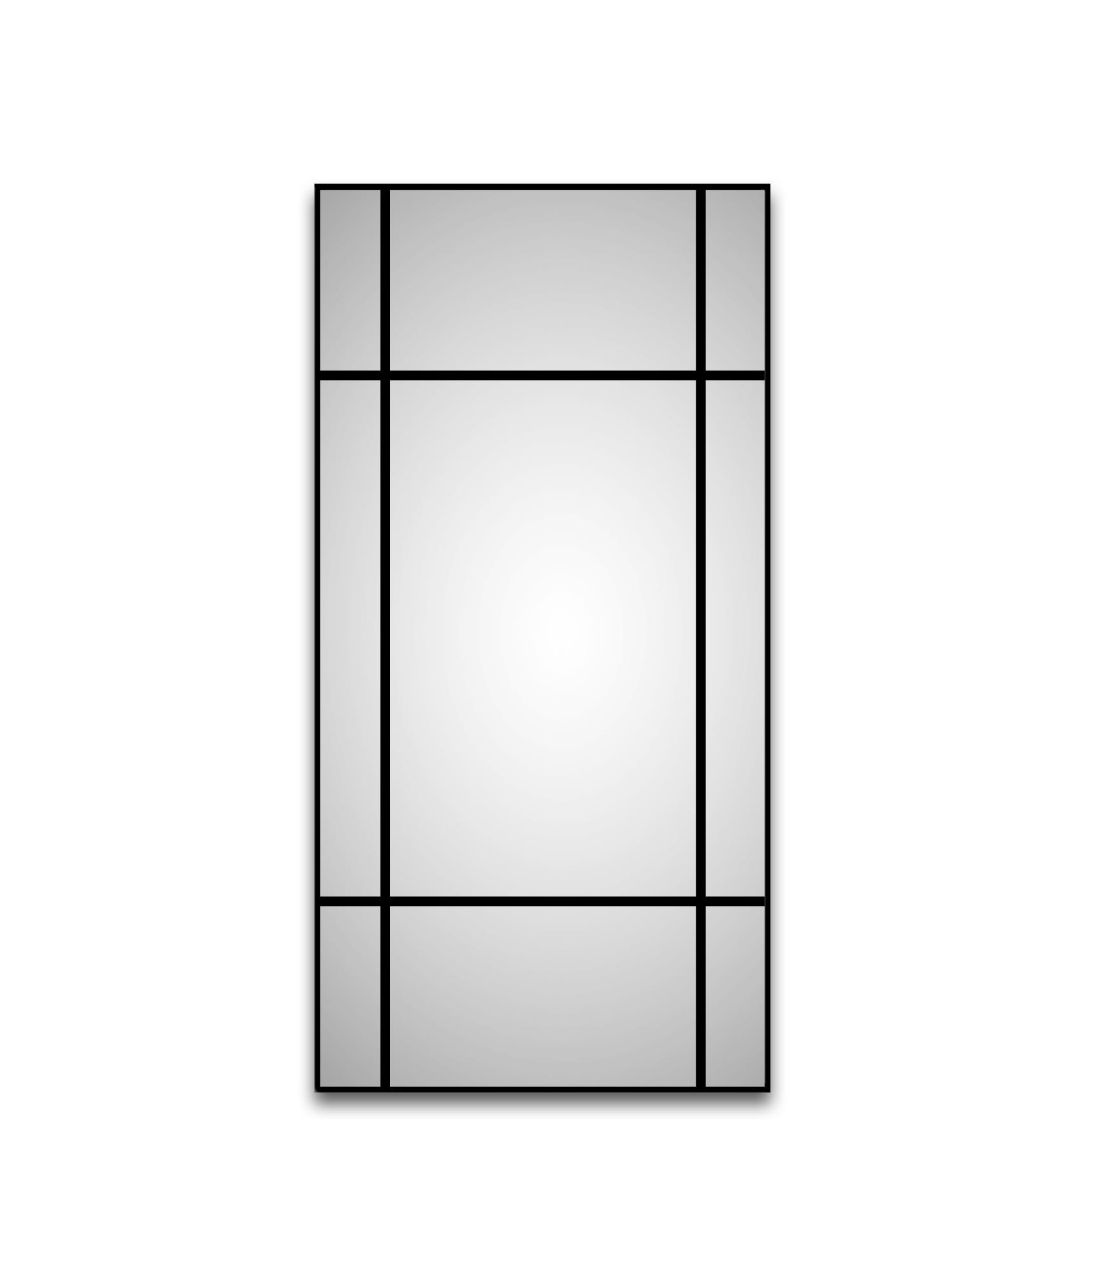 DSK Design Spiegel Black Loftstyle 60x120 cm, schwarz von DSK